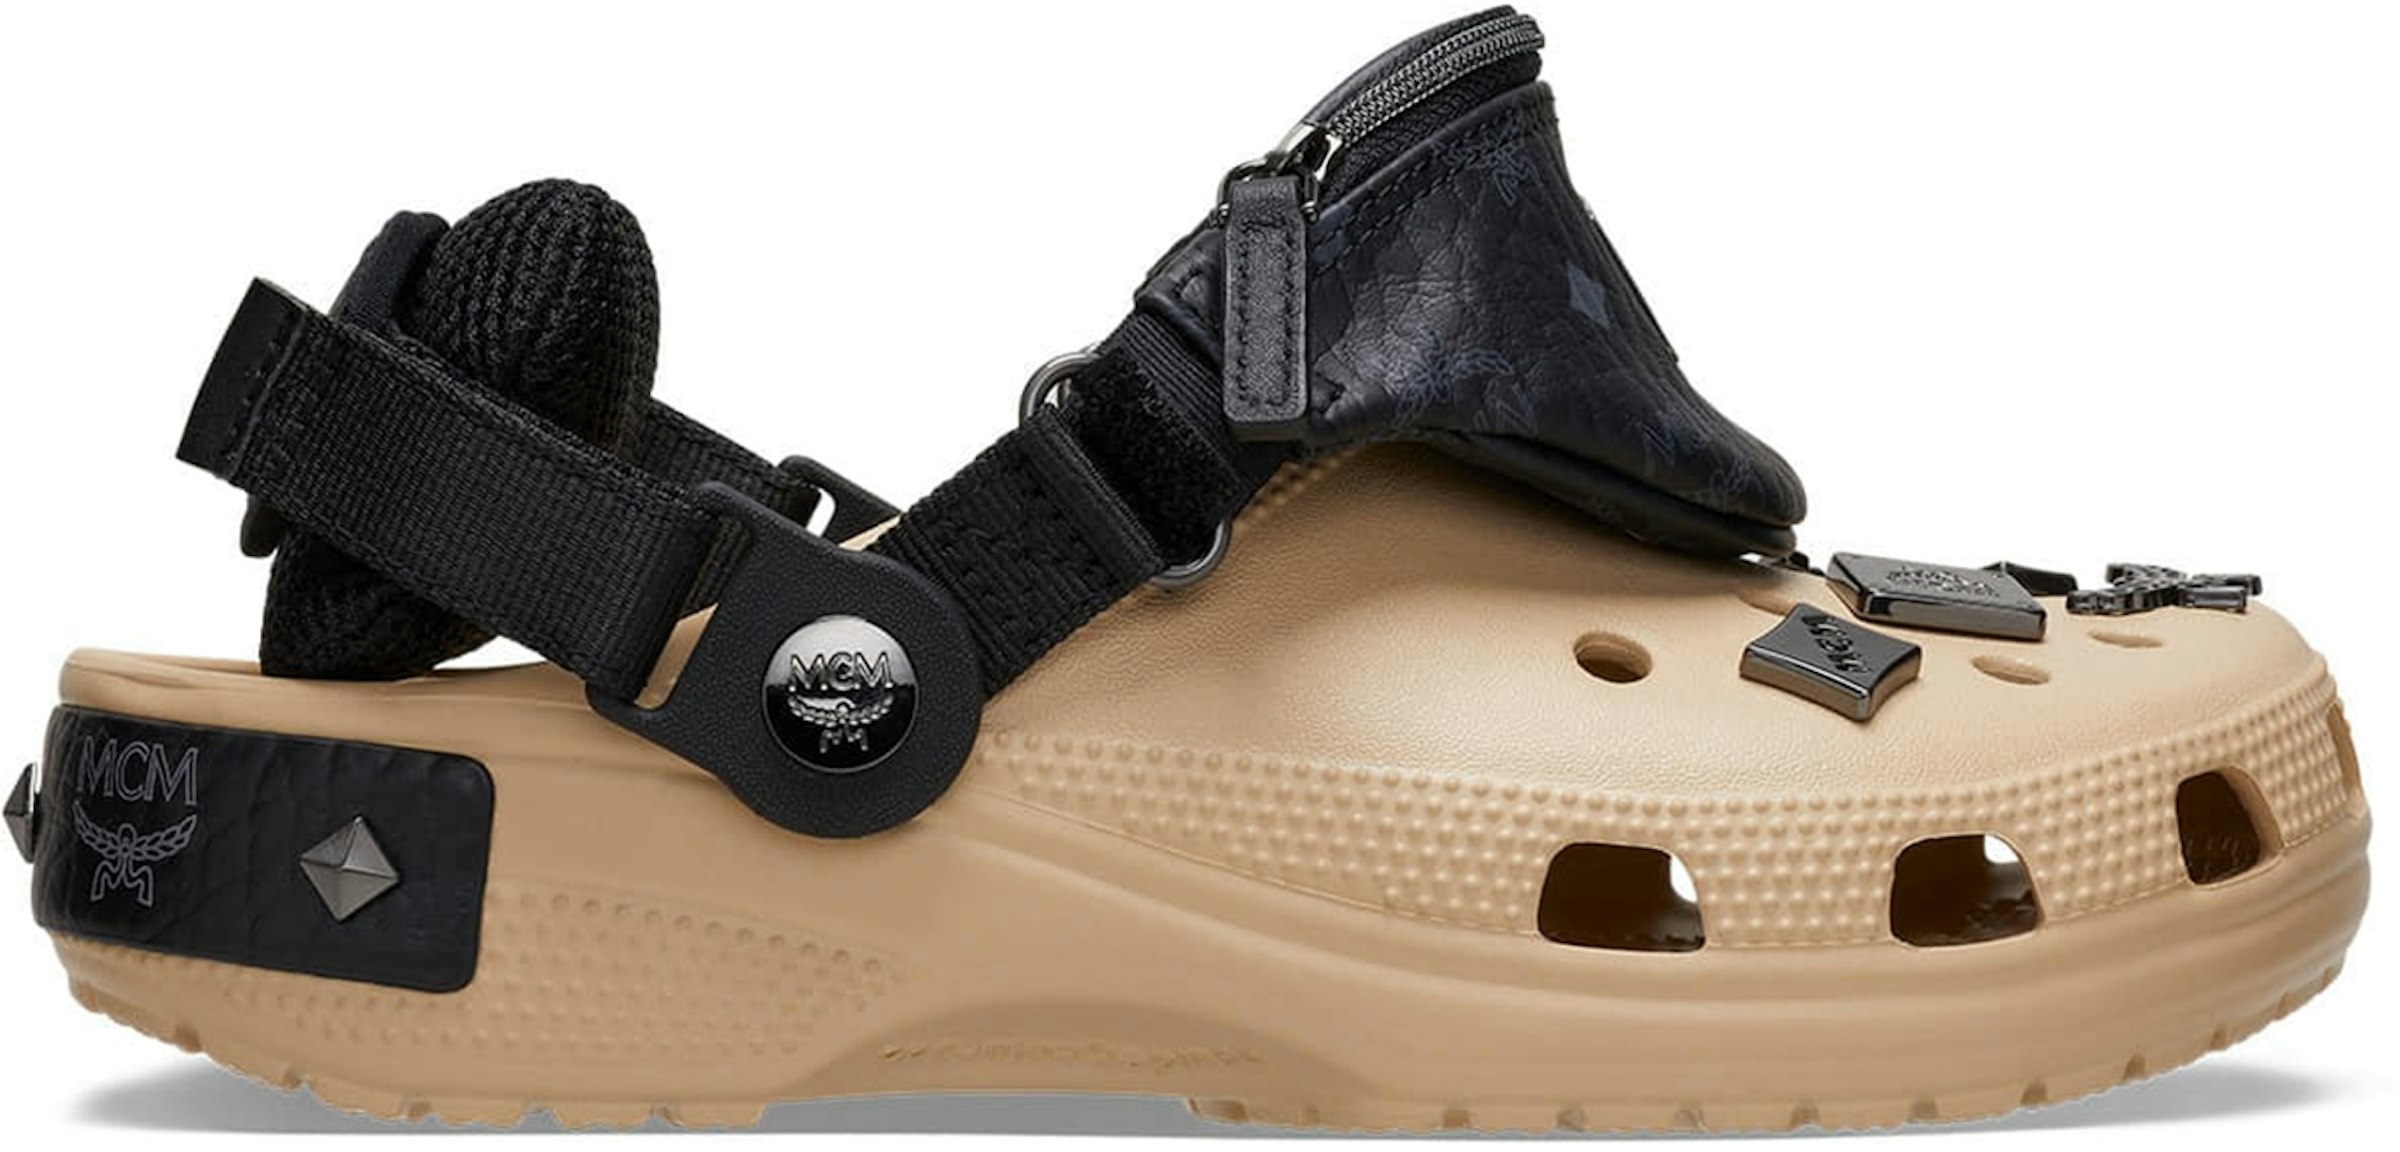 Black Lives Matter Croc Charms, Blm Shoe Charms Crocs